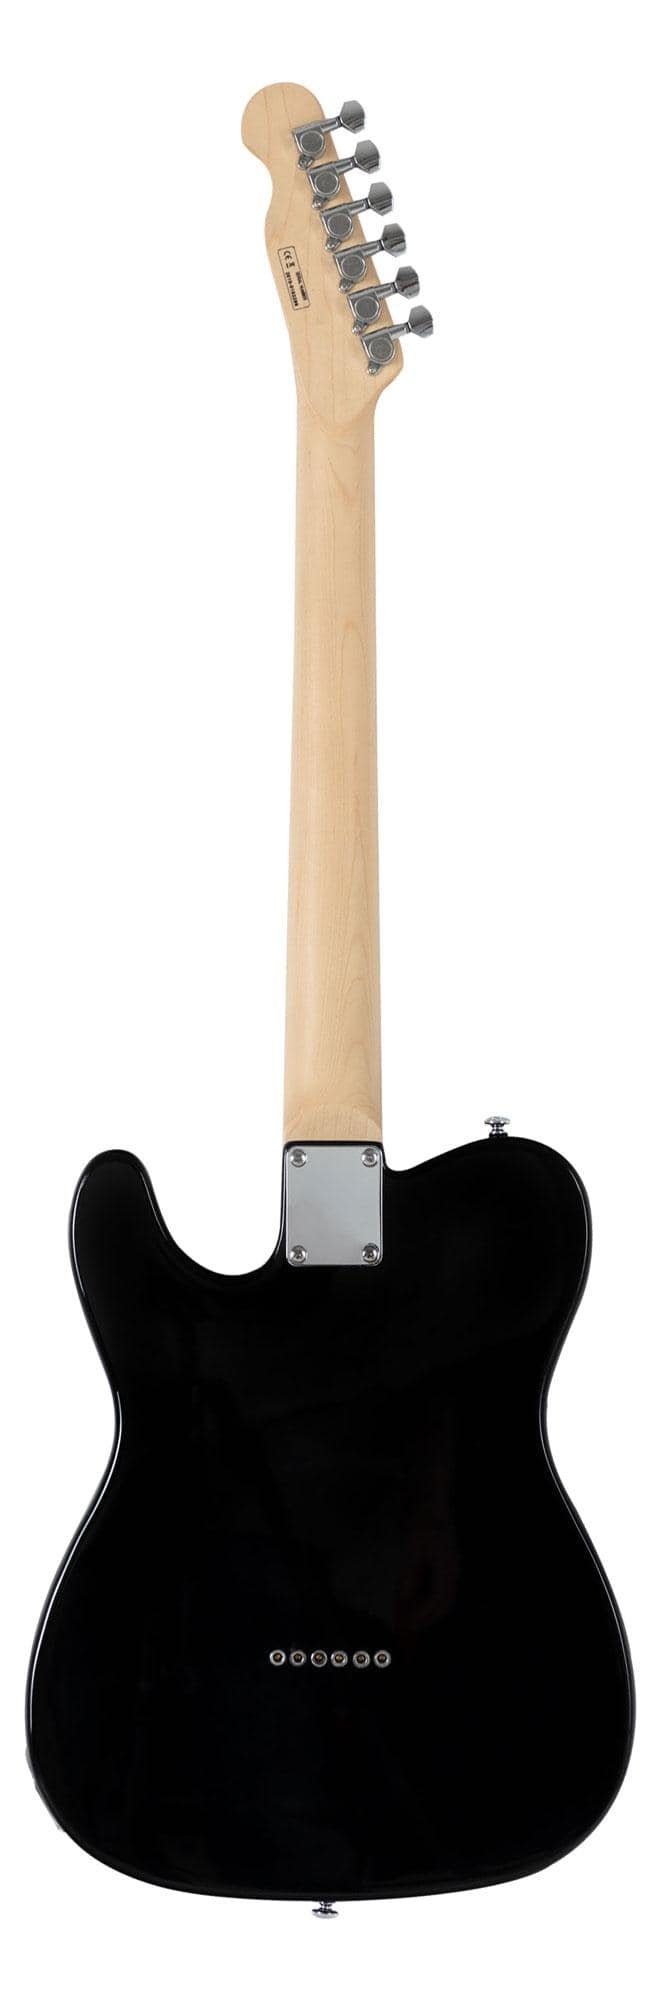 Shaman E-Gitarre TCX-100 - TL-Bauweise - geölter Hals aus Ahorn -  Ahorn-Griffbrett, inkl. 15W Gitarren Amp & 5 teiligem Zubehörset